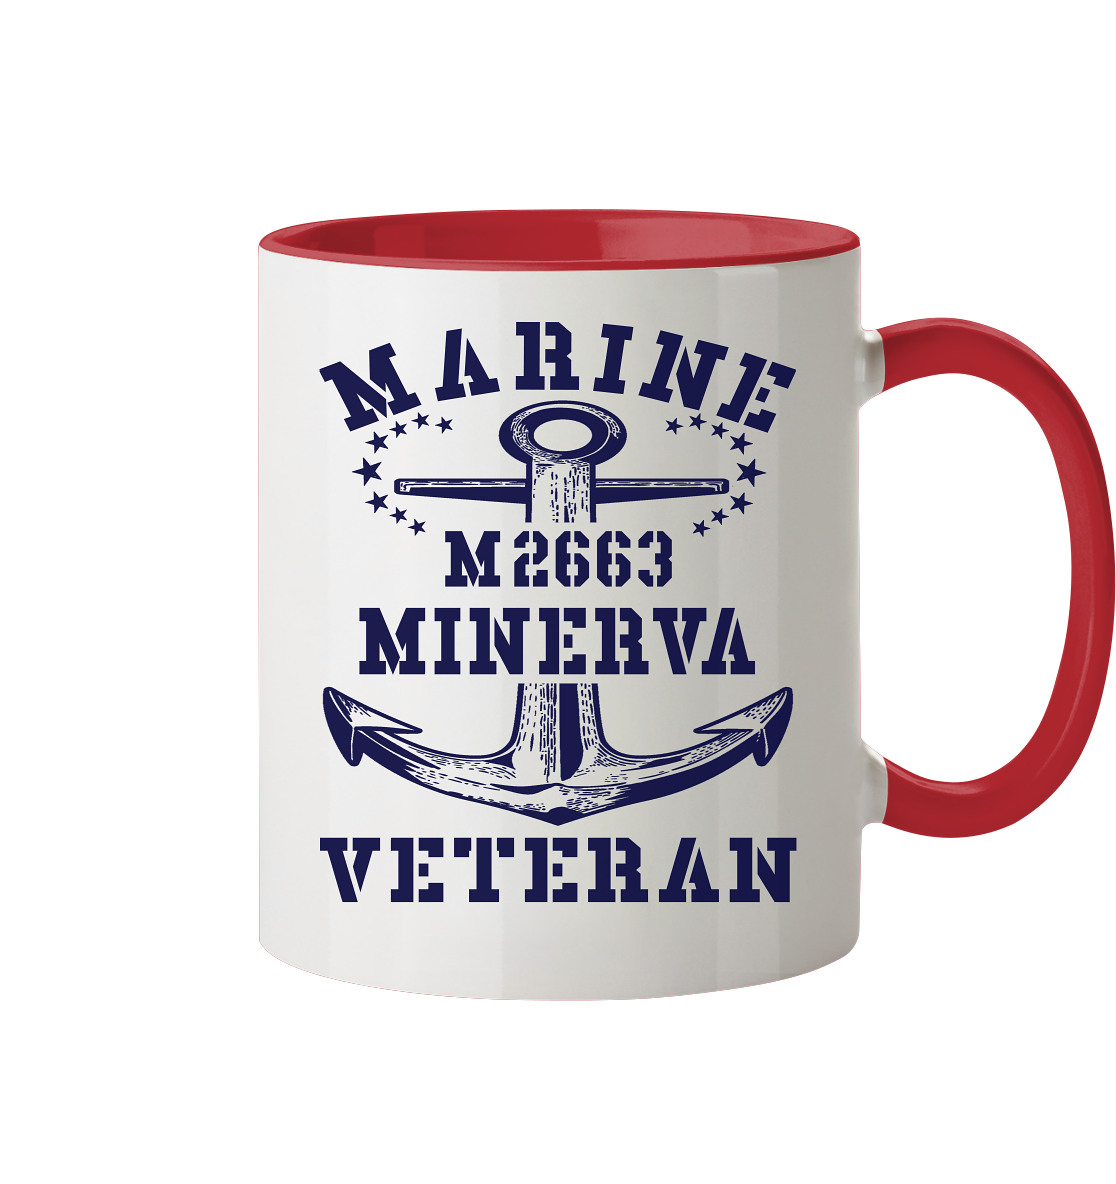 BiMi M2663 MINERVA Marine Veteran - Tasse zweifarbig